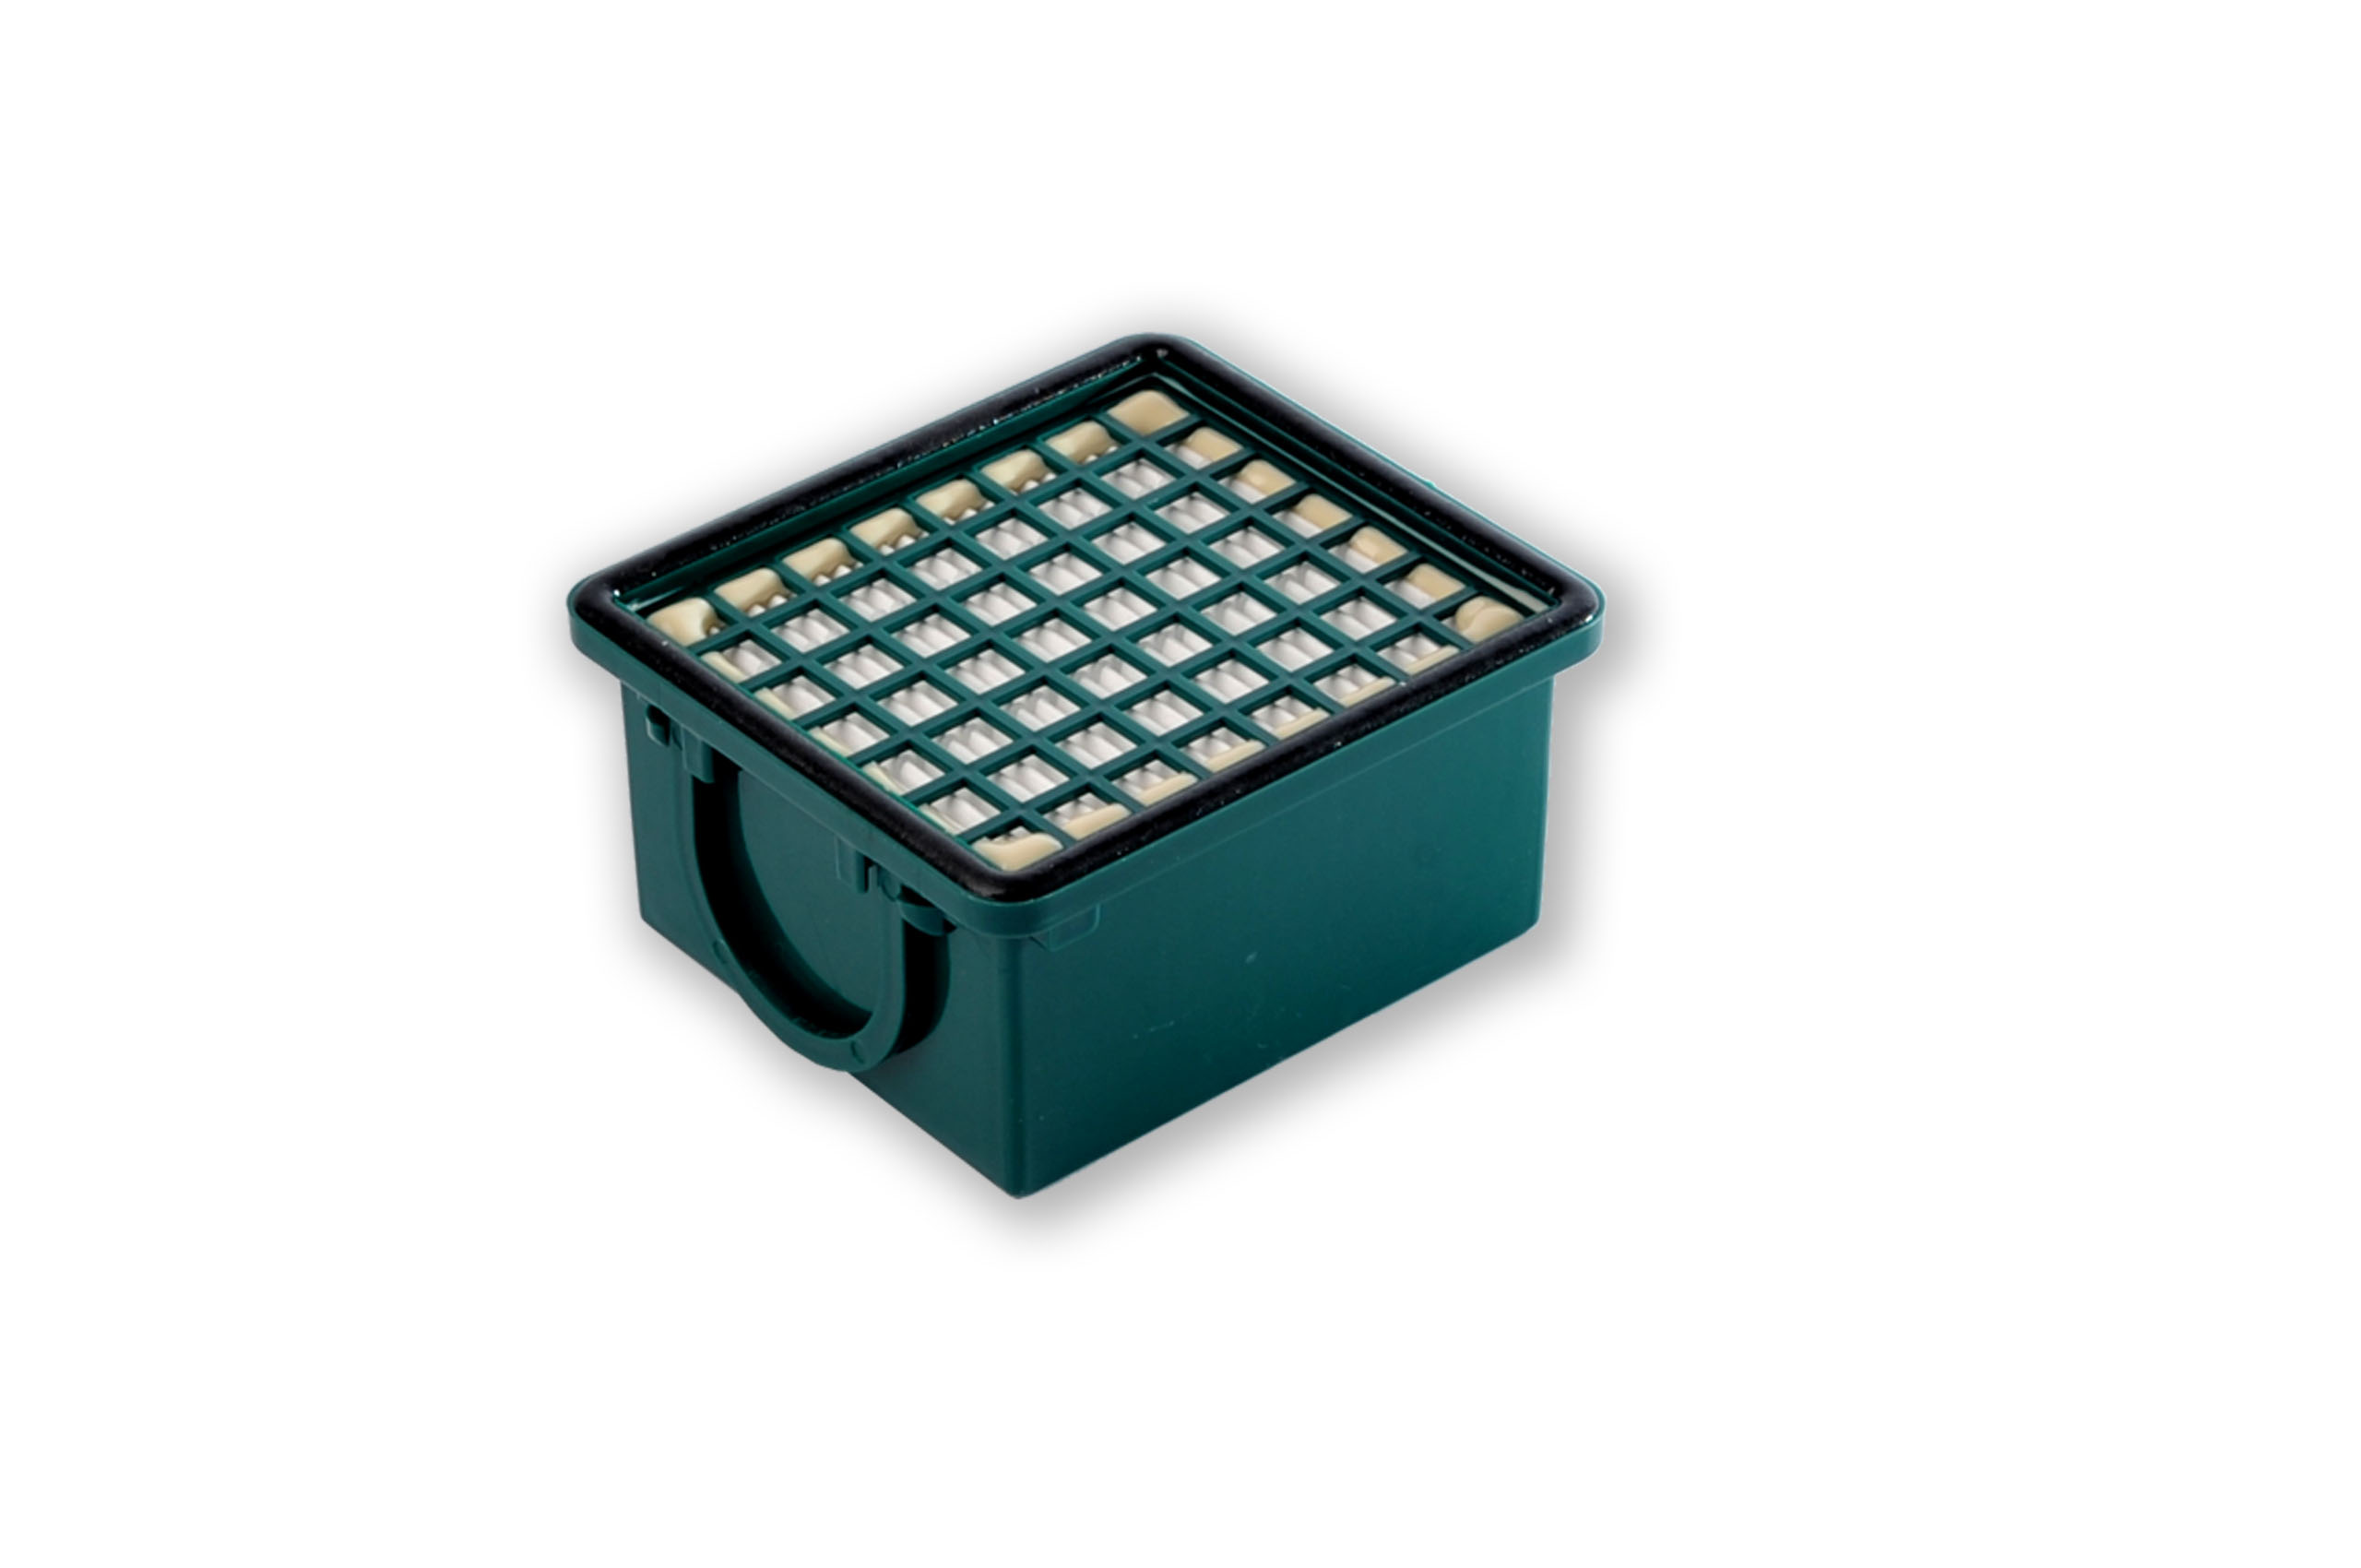 Filterset kompatibel mit Vorwerk Kobold VK 130, VK 131, SC: 30 Staubsaugerbeutel ähnlich FP 130, FP 131 , Staubbeutel + 1 Hygiene-Mikrofilter HEPA + 1 Aktivkohlefilter